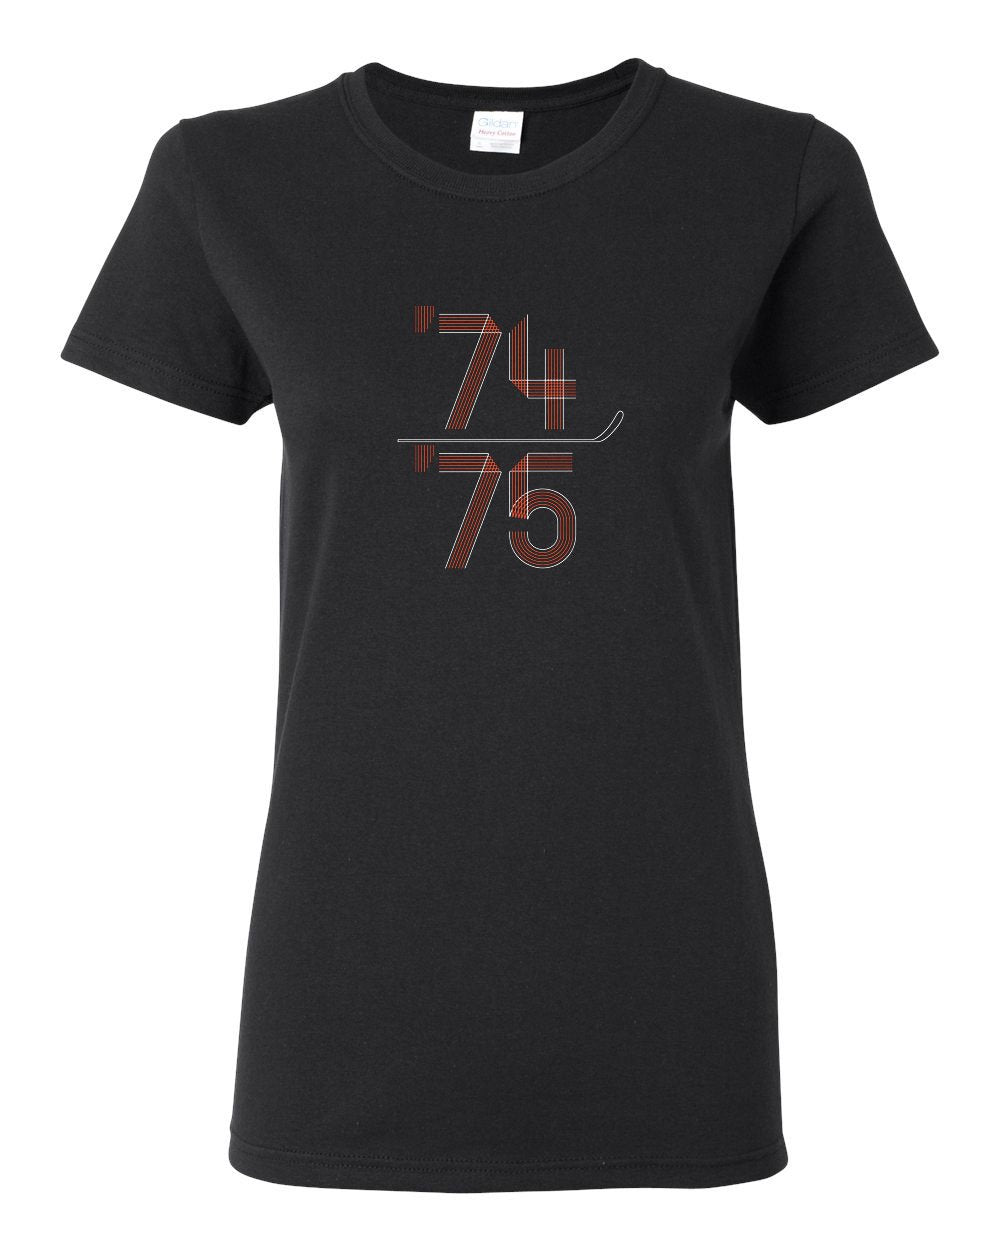 74-75 LADIES Missy-Fit T-Shirt